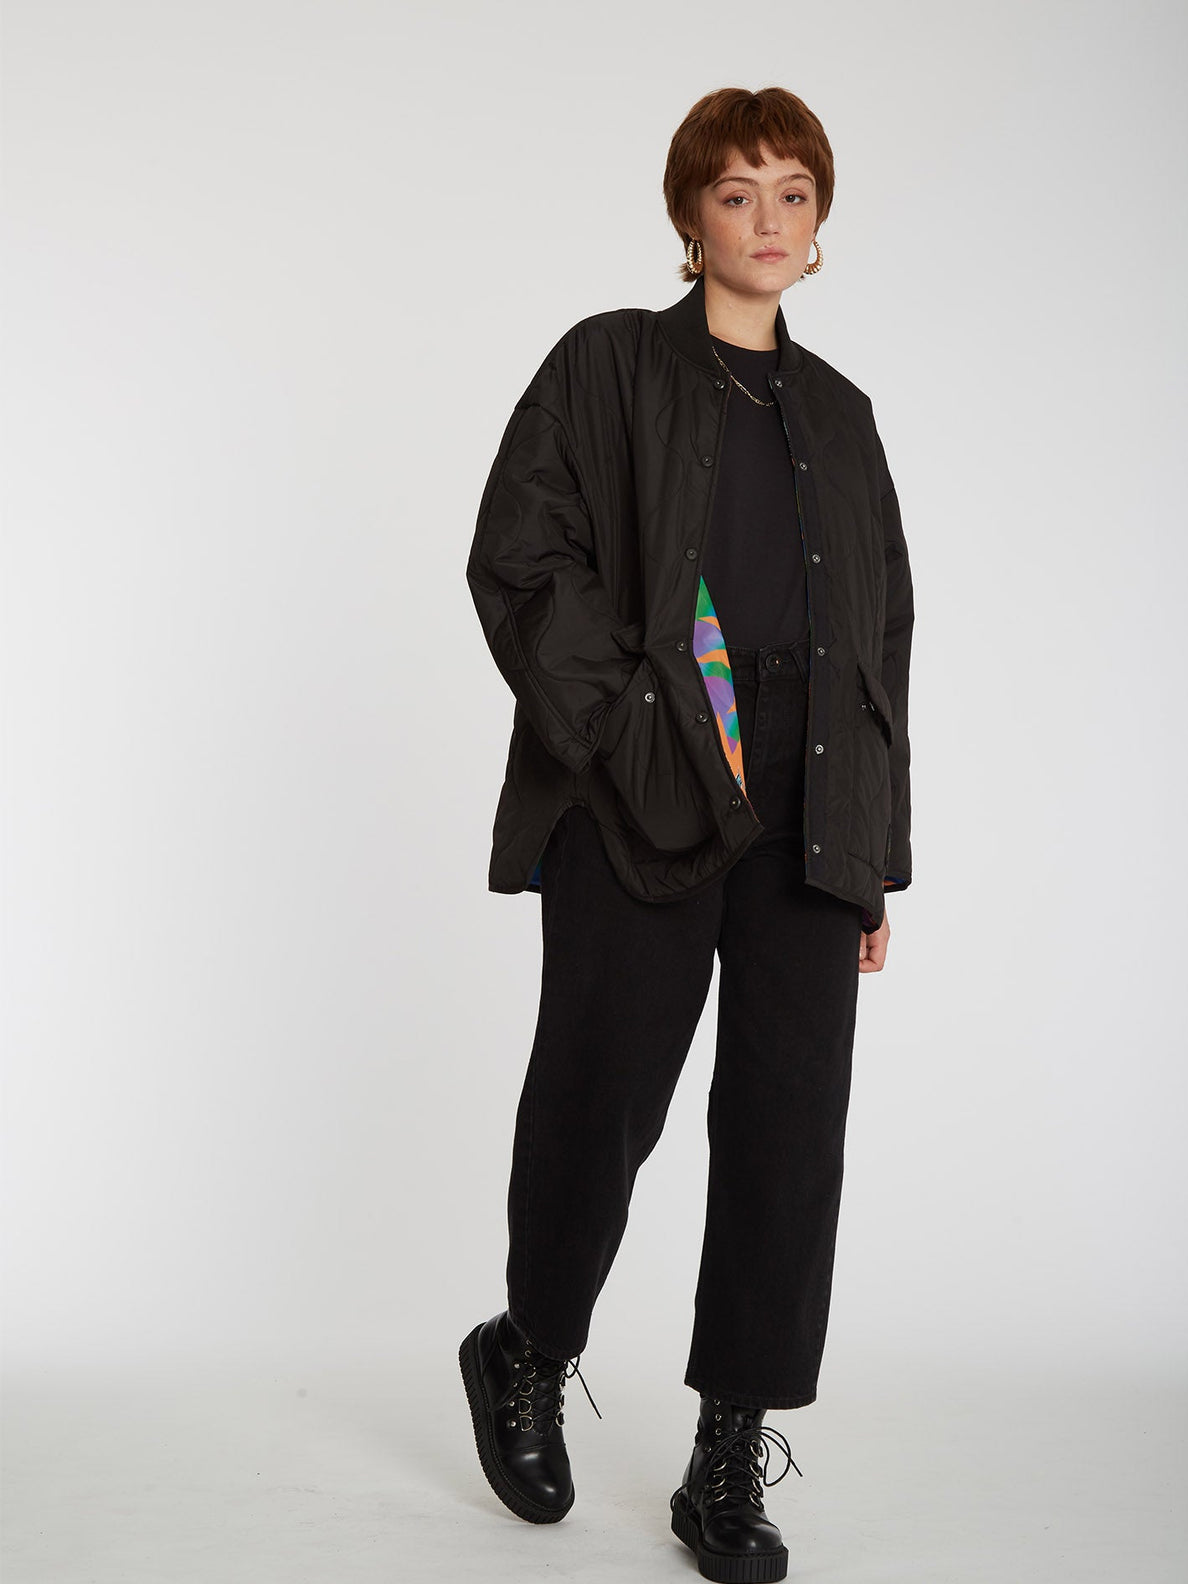 Chrissie Abbott X French Jacket (Reversible) - BLACK (B1732204_BLK) [10]